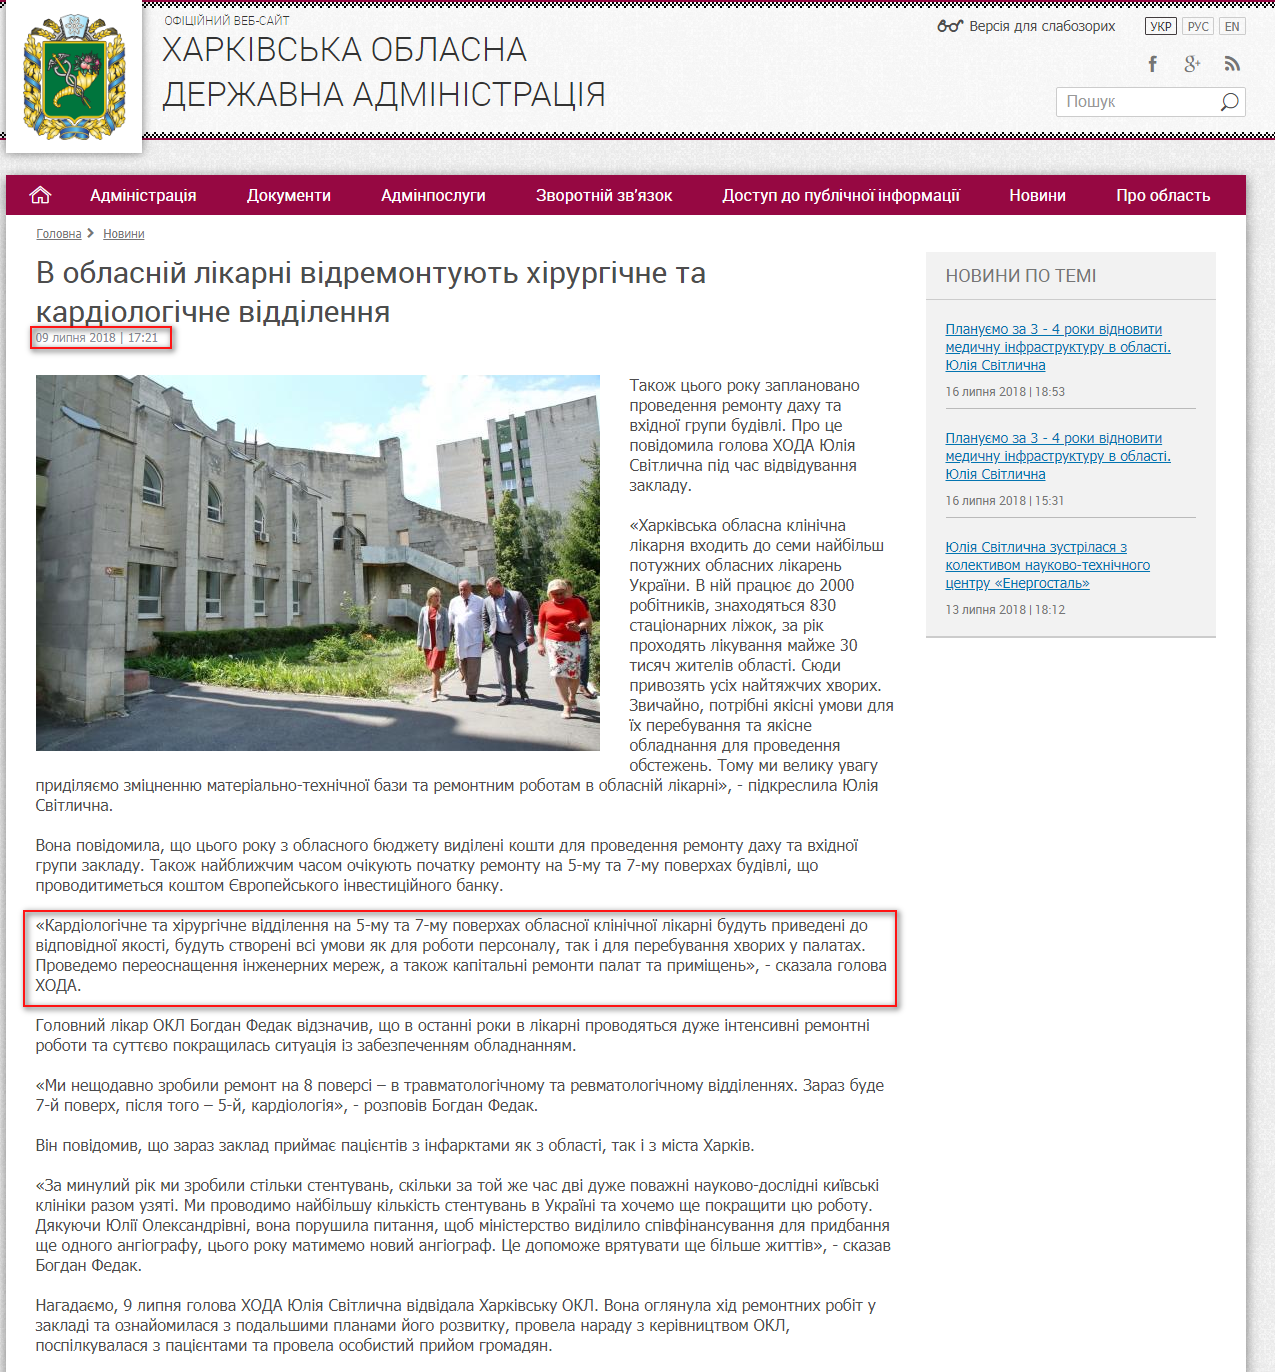 http://kharkivoda.gov.ua/news/93793